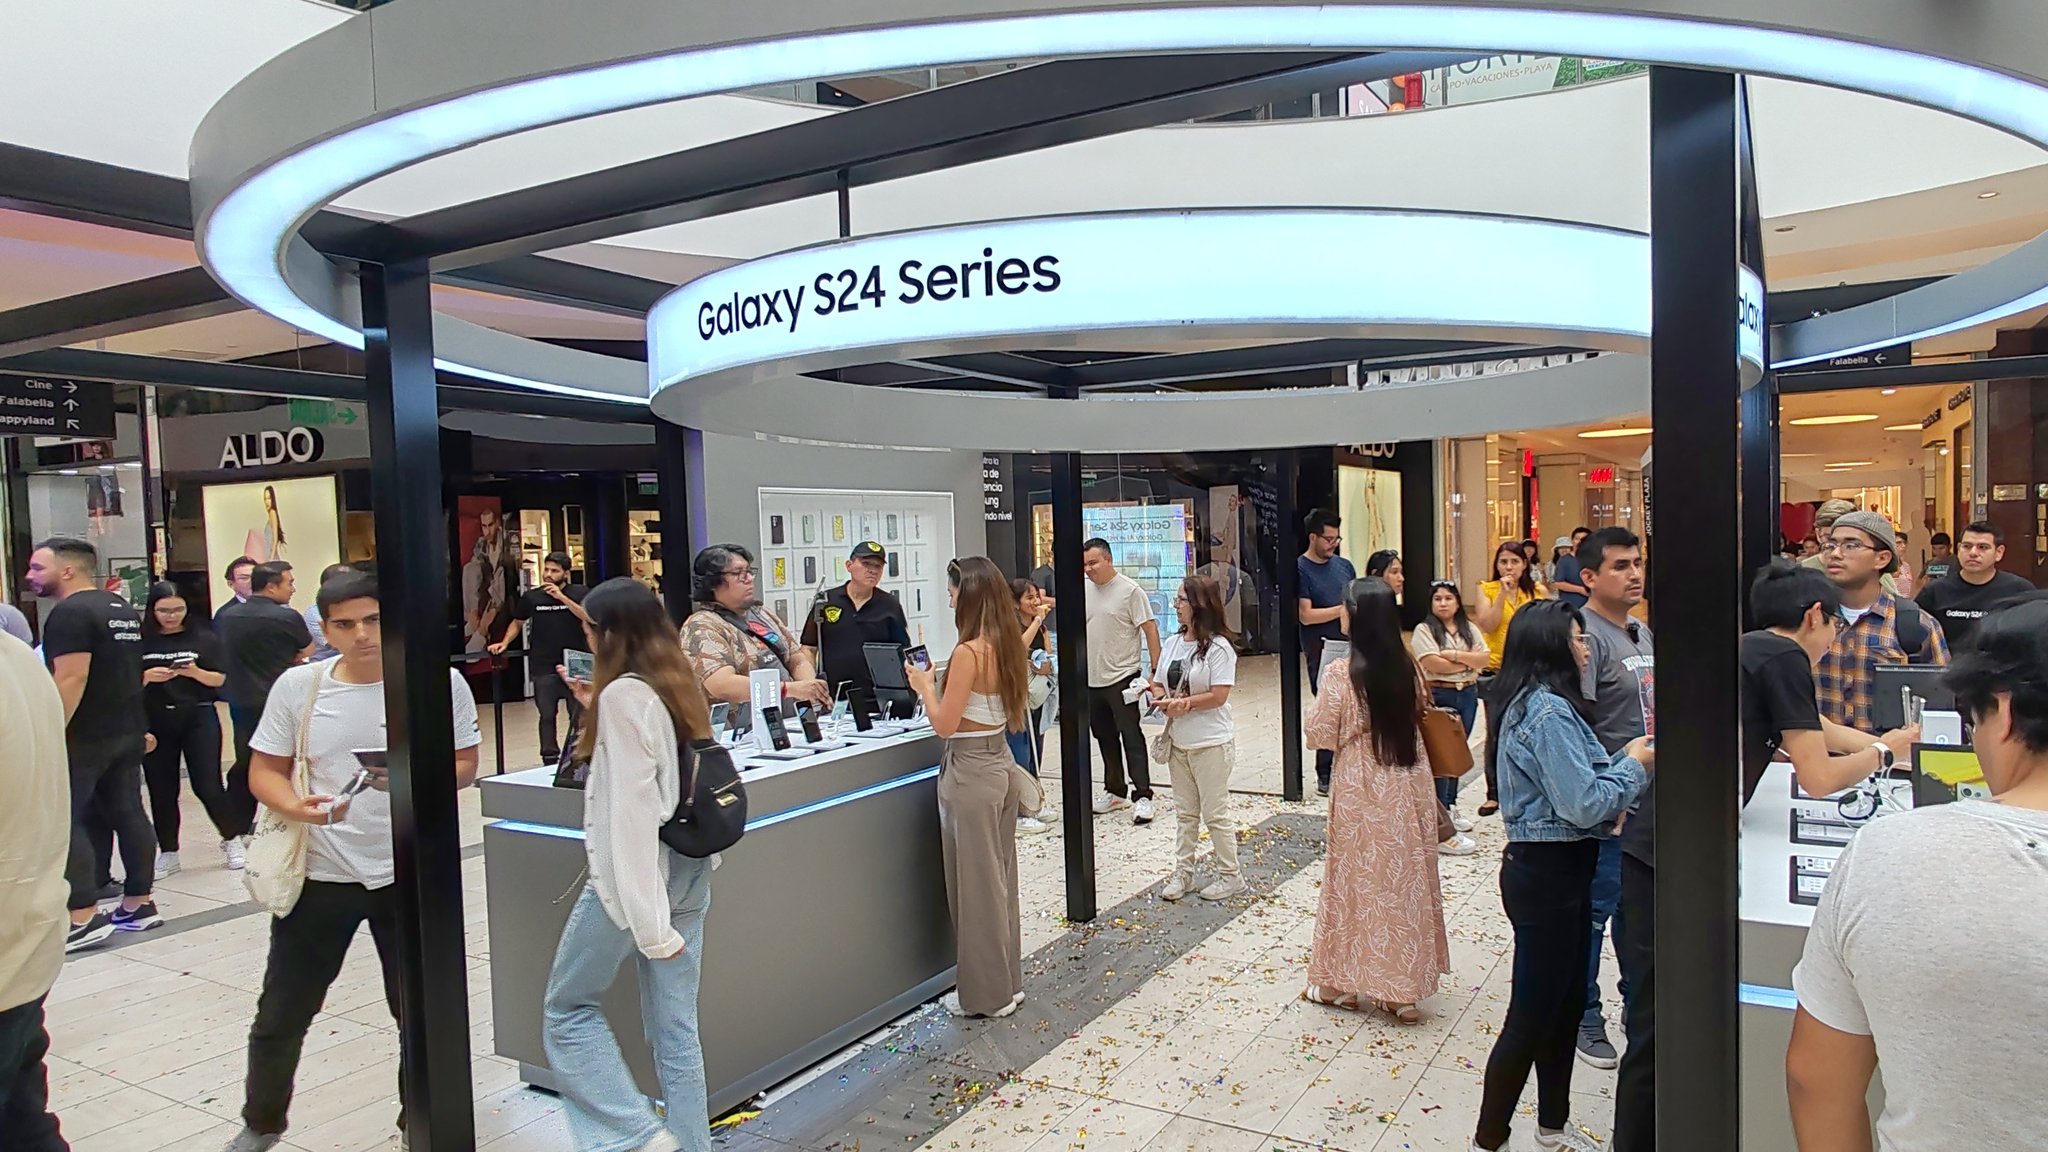 Serie Galaxy S24 llega al Perú. Conoce los precios de lanzamiento - Enterados.pe 